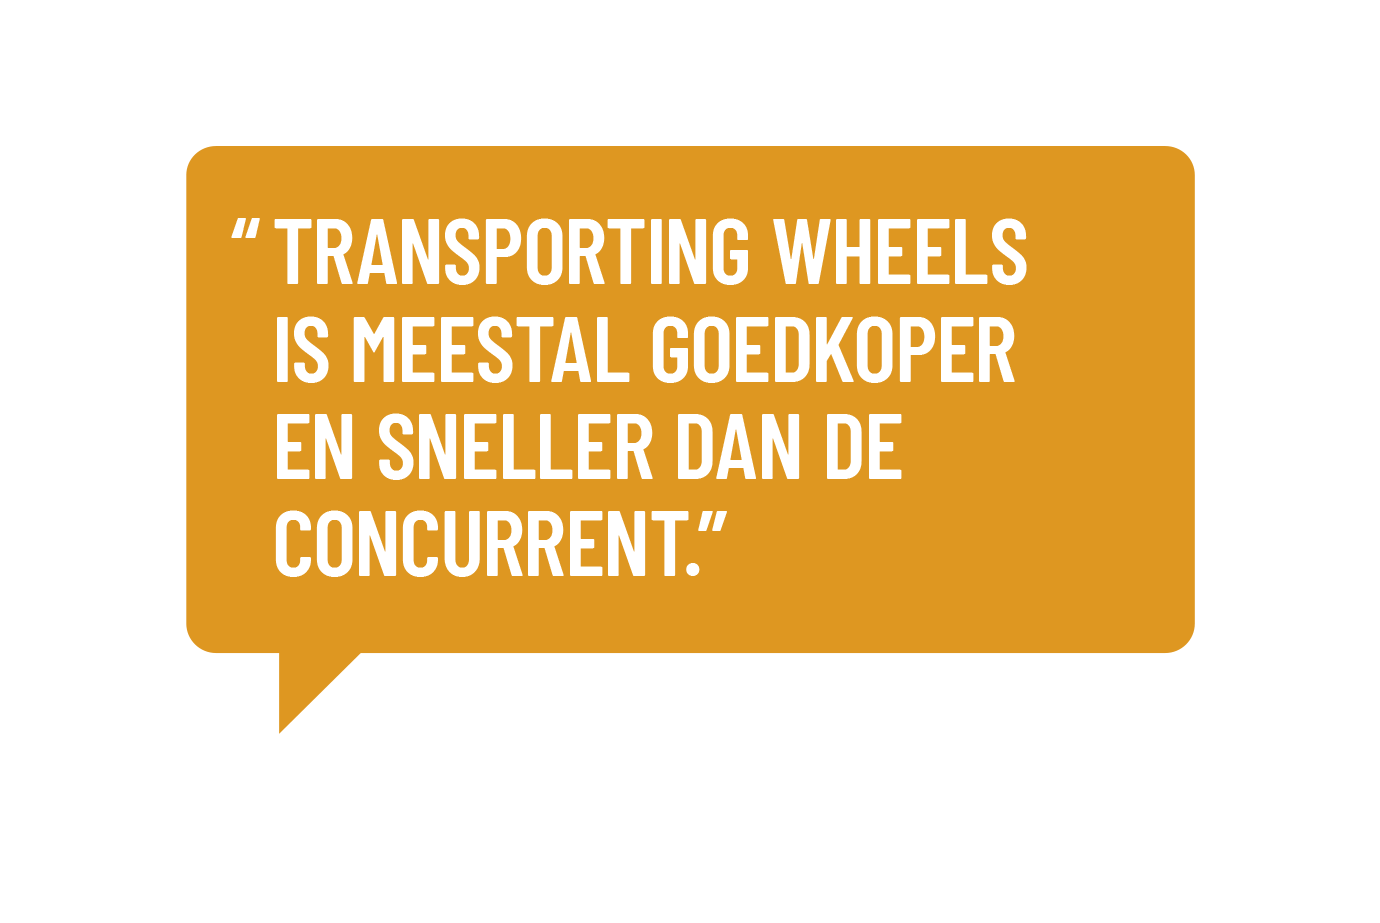 "Transporting Wheels is meestal goedkoper en sneller dan de concurrent"